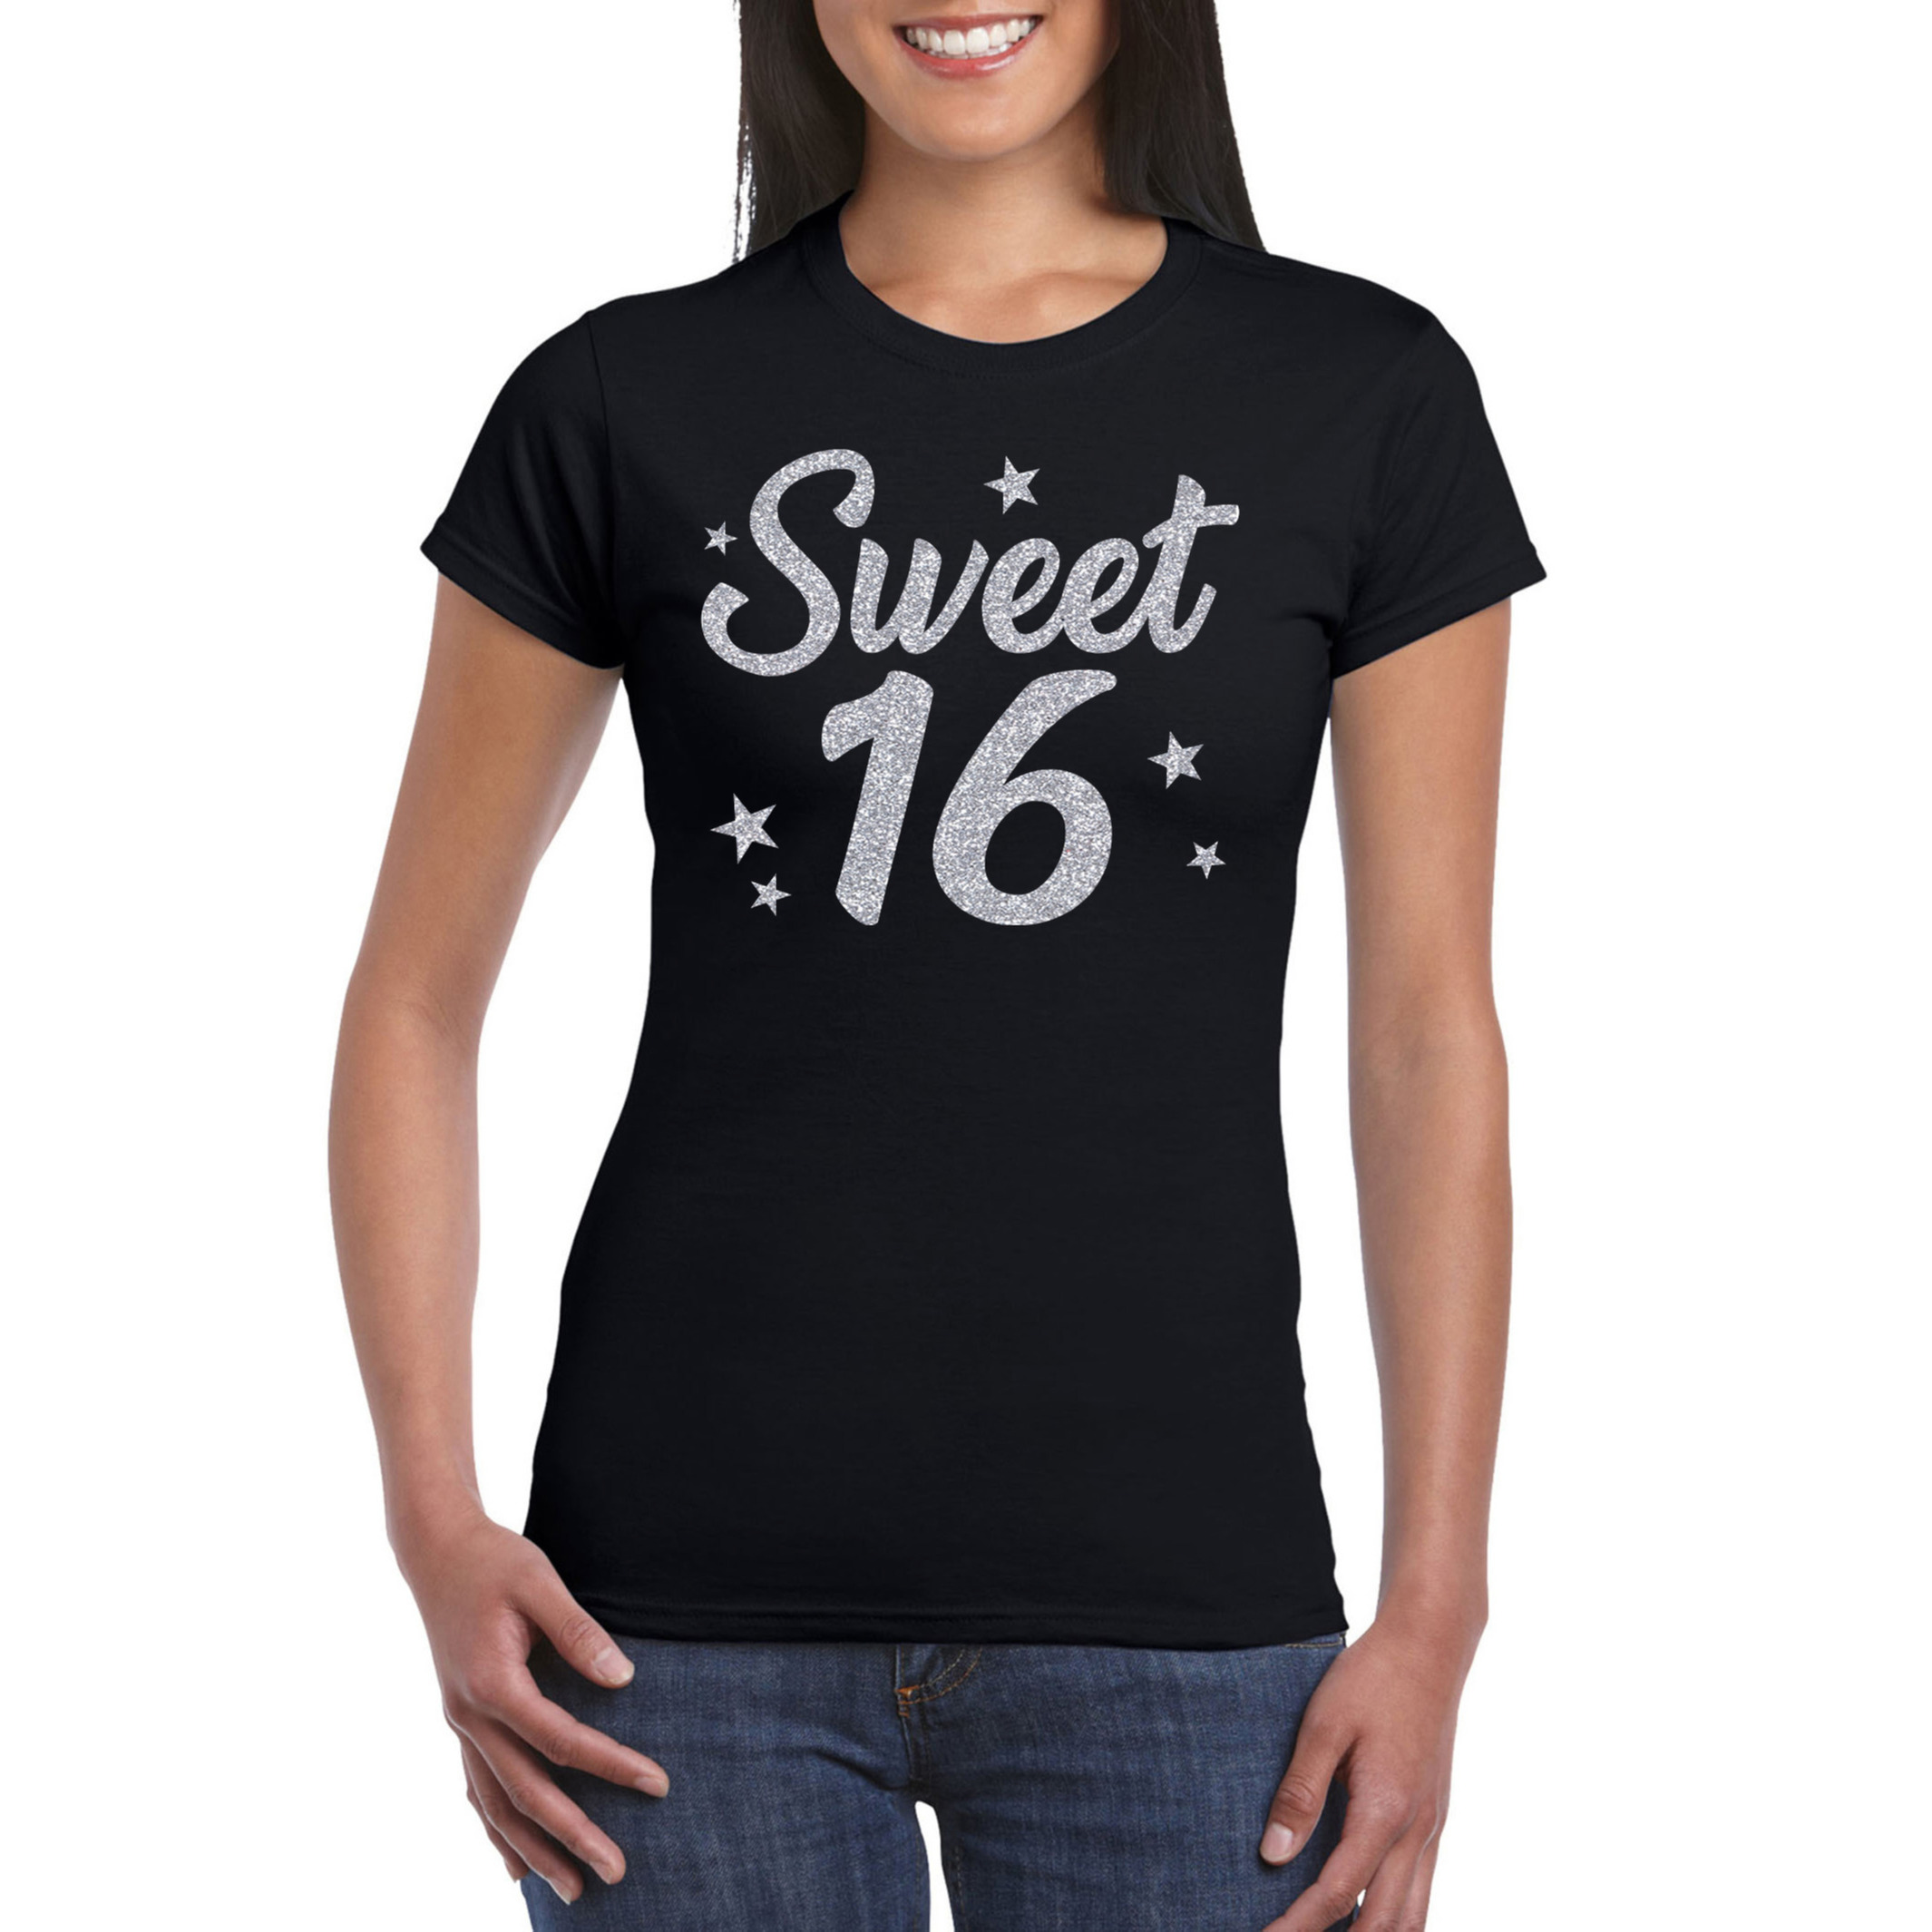 Sweet 16 zilver glitter verjaardag cadeau t-shirt zwart dames